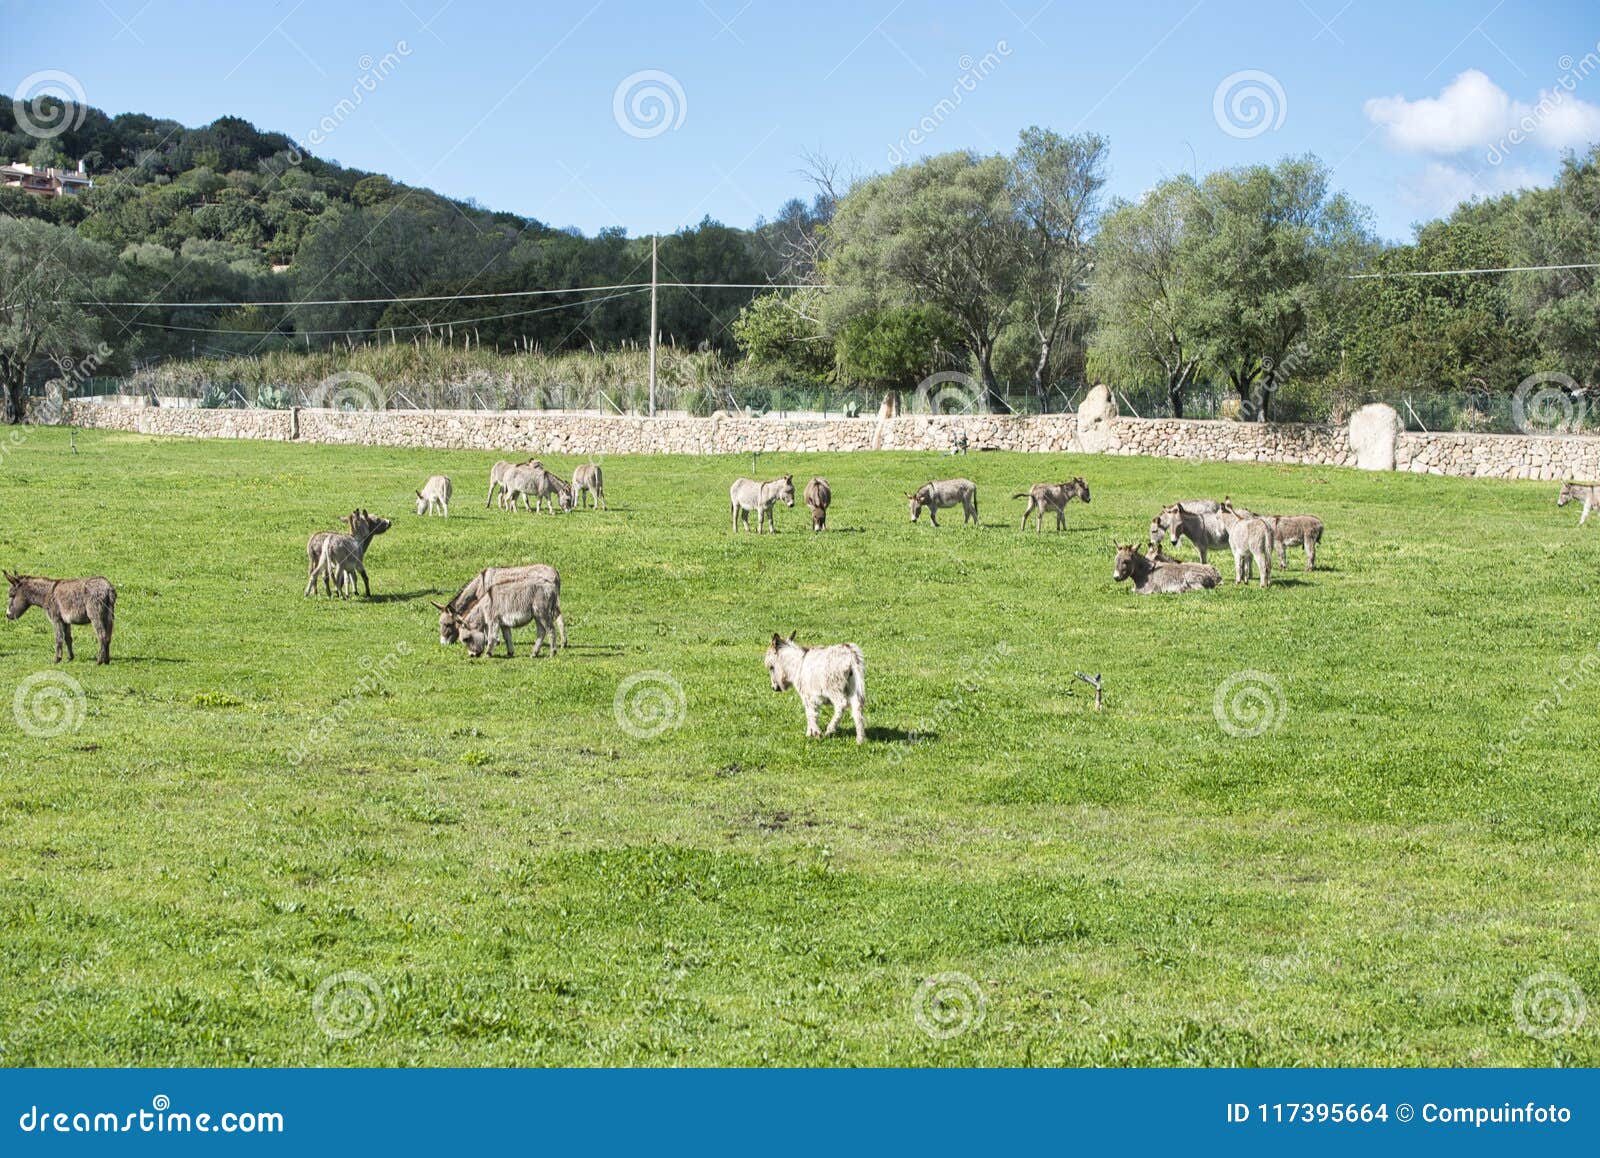 donkey on the italian island of sardinia